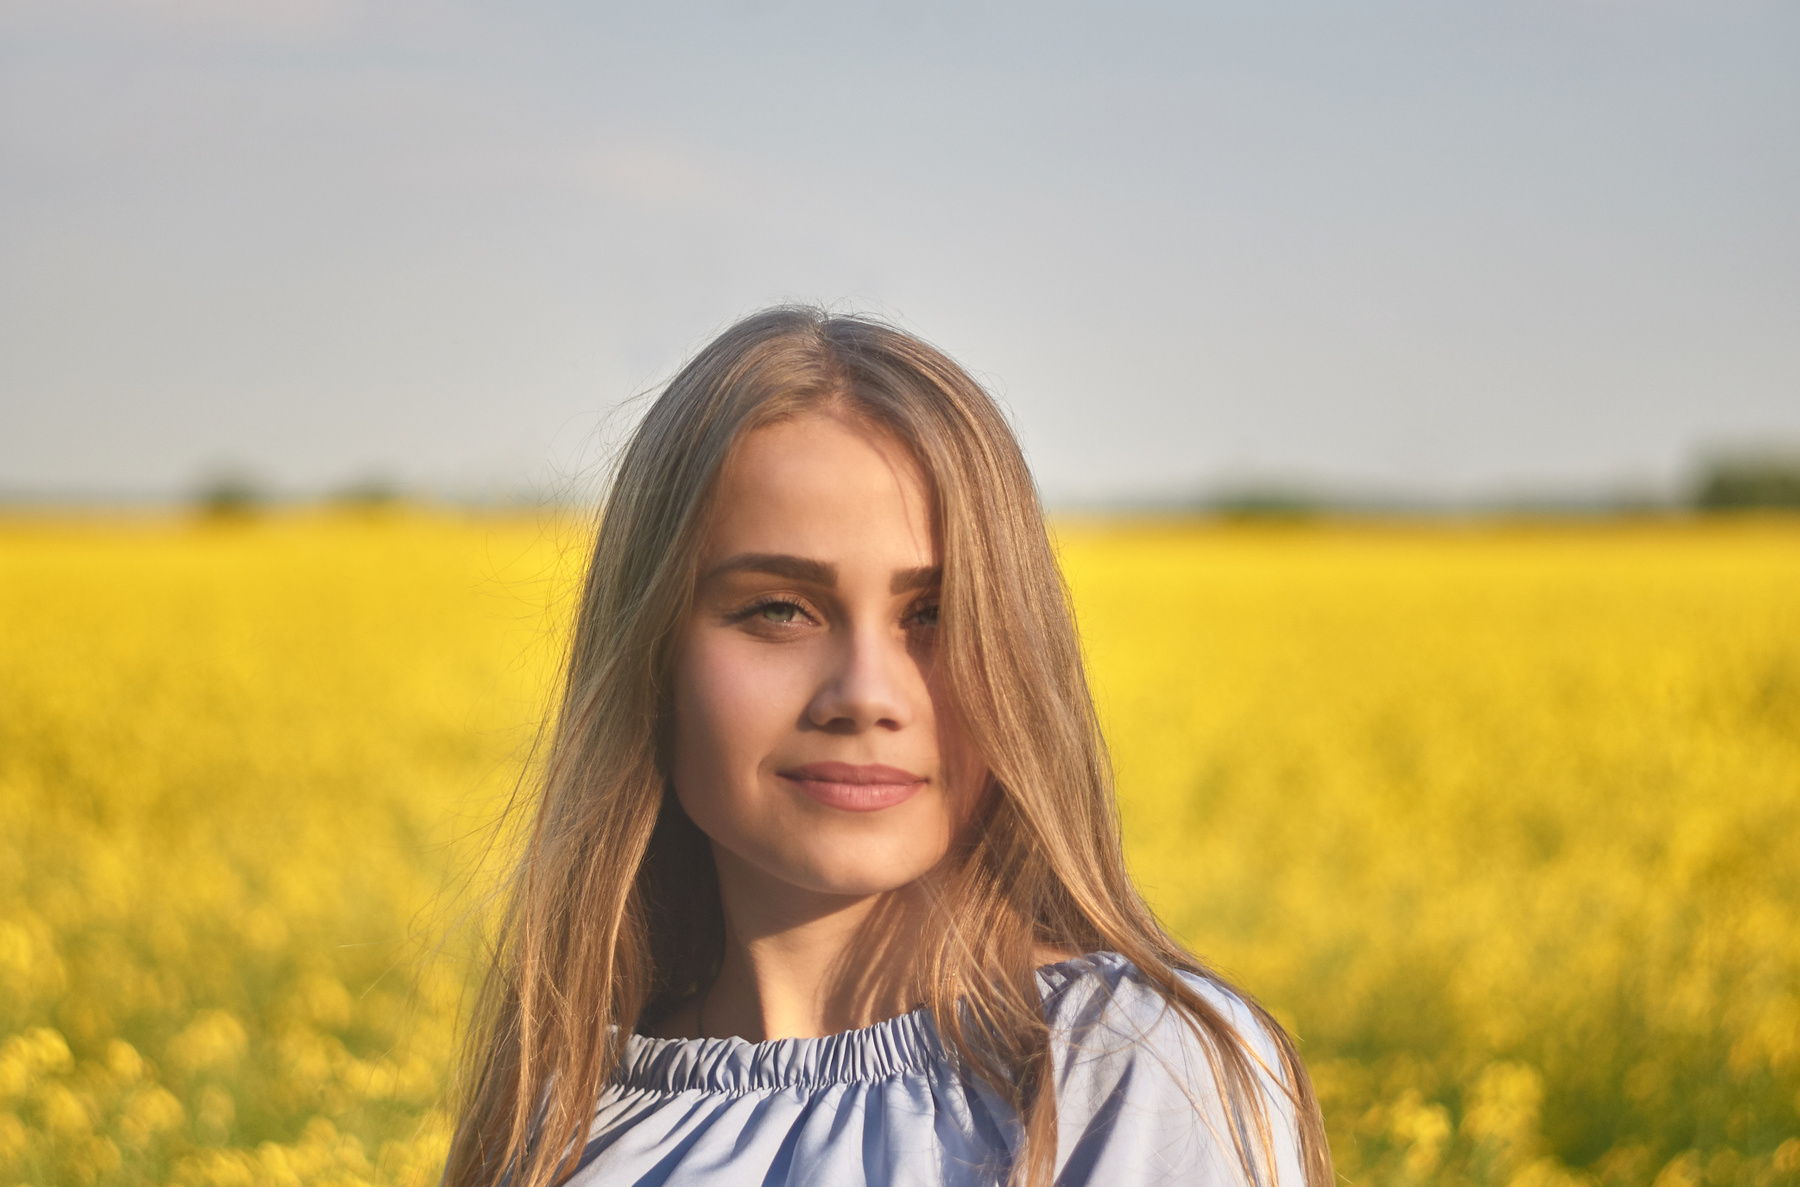 *** девушка весна портрет поле рапс желтое